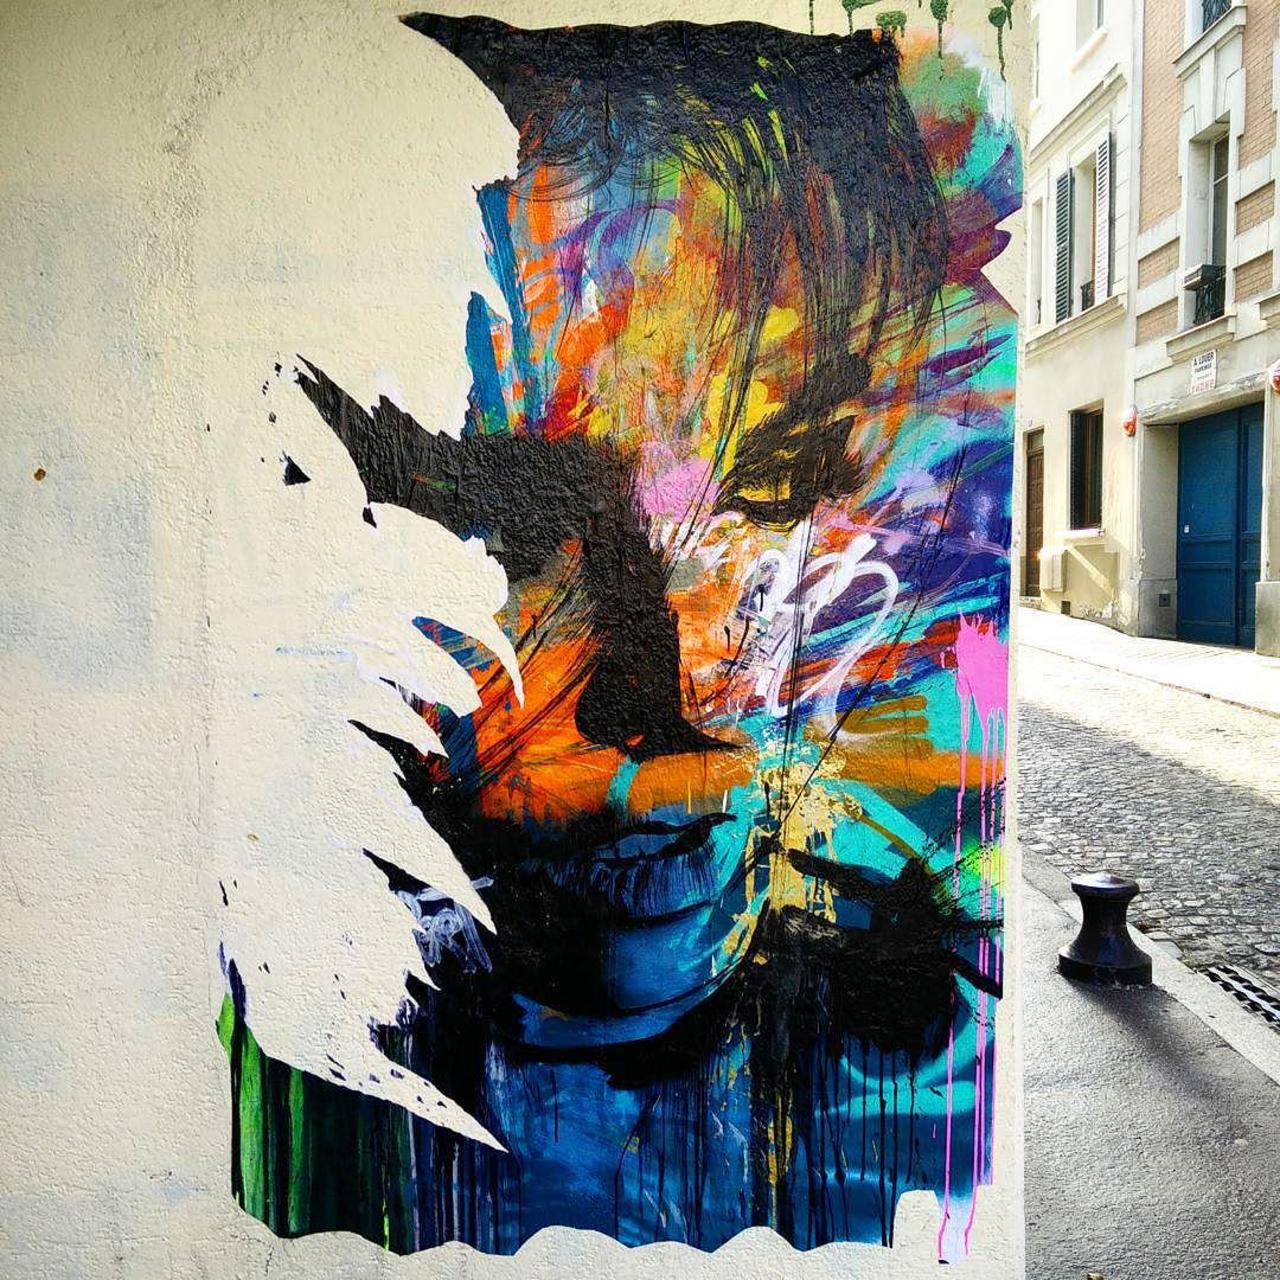 Jai_5511: RT circumjacent_fr: #Paris #graffiti photo by ceky_art http://ift.tt/1joHaAQ #StreetArt http://t.co/Qn3cPnPr77